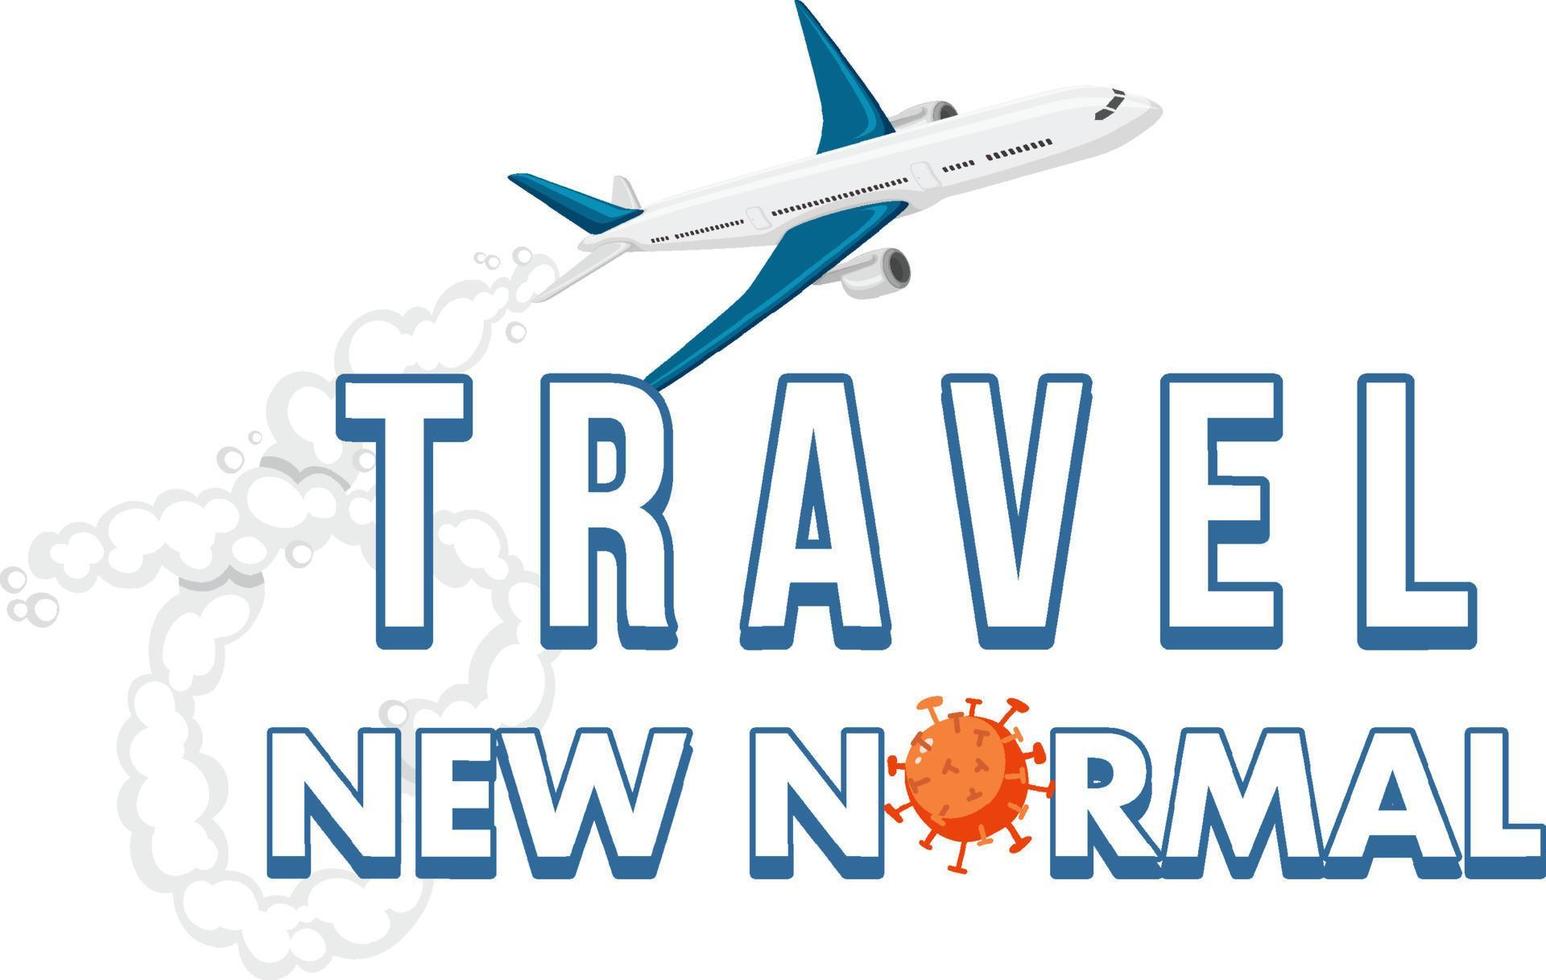 viaggiare con il nuovo design del logo della parola normale vettore